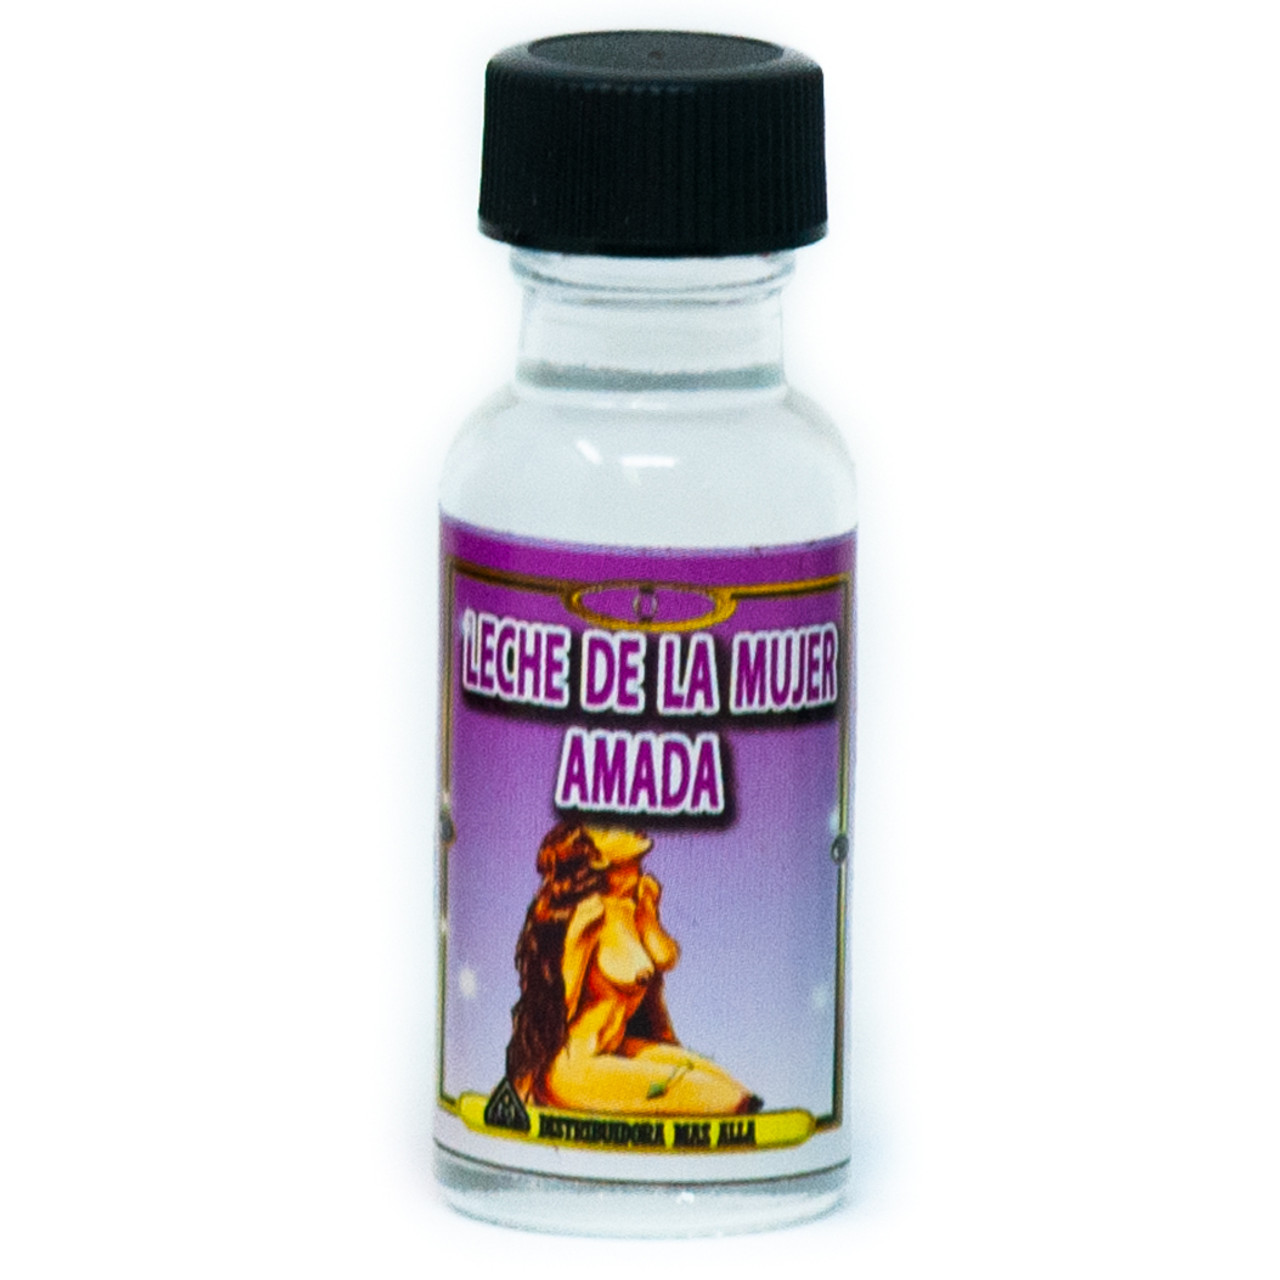 Aceite Leche de la mujer amada - Esoteric Ritual Oil - Wholesale